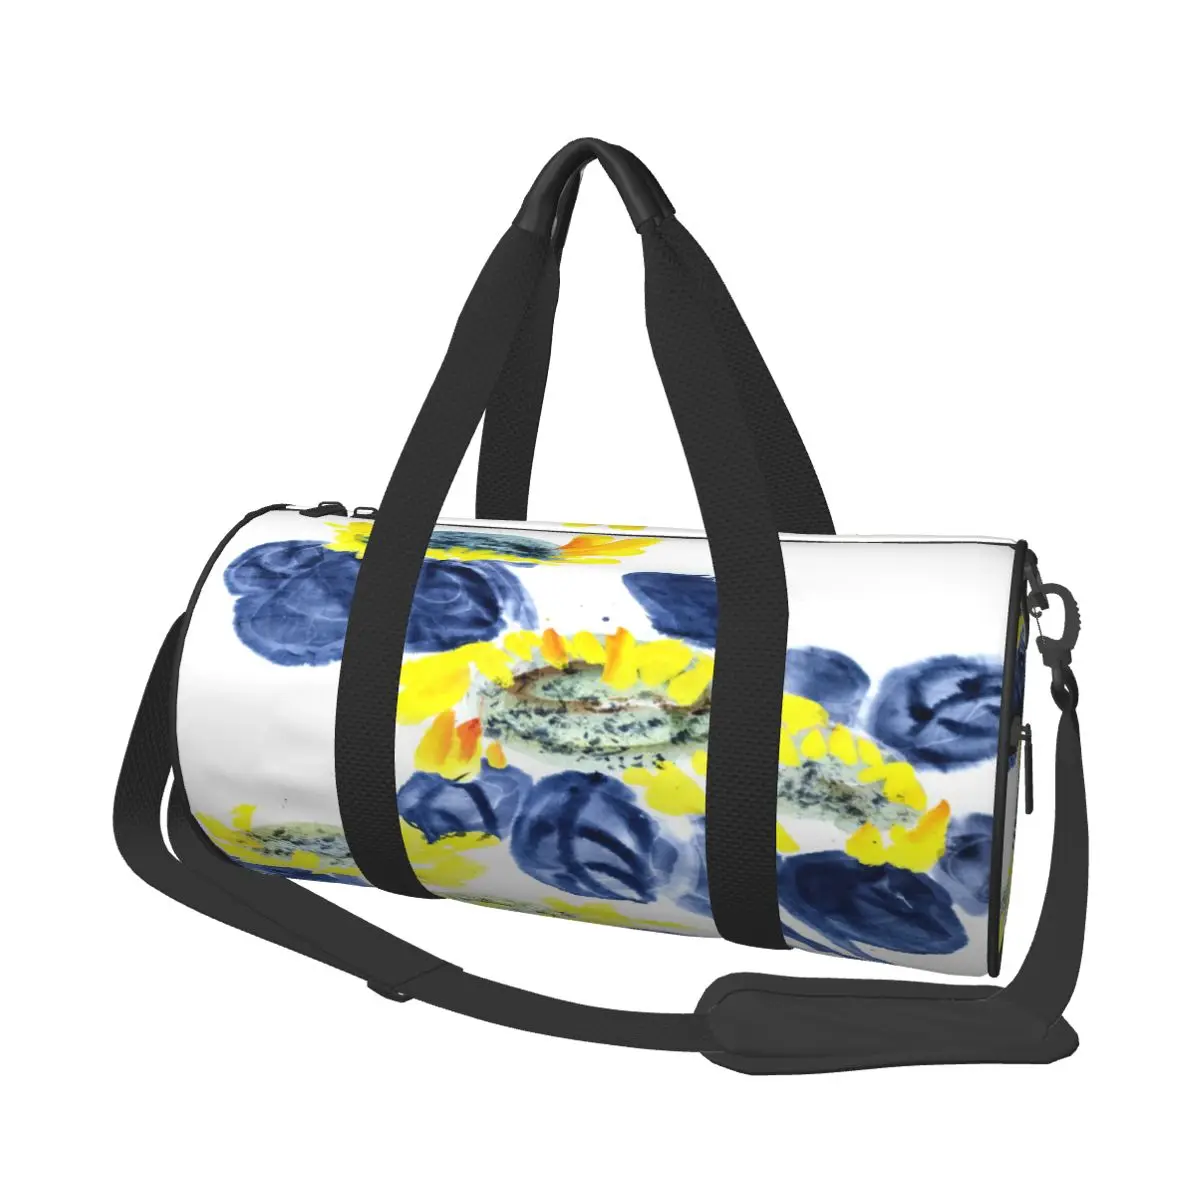 

Travel Bag Duffle Traditional Flower Art Fitness Bag Handbag Bag Luggage Shoulder Bag Zipper Weekend Sport Gym Bag